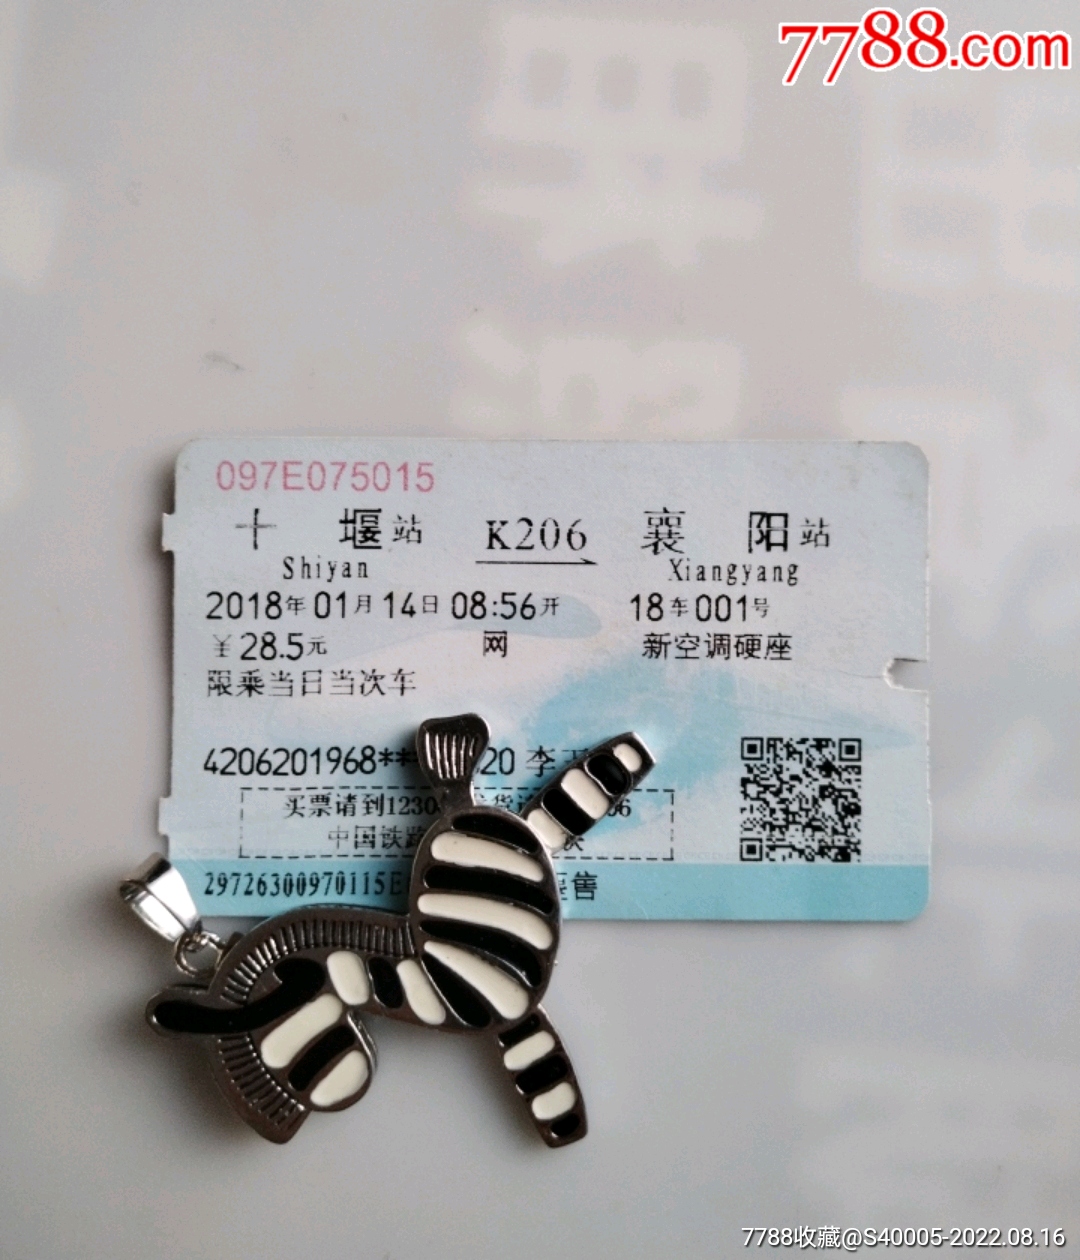 赤壁北-G1526-武汉-火车票-7788收藏